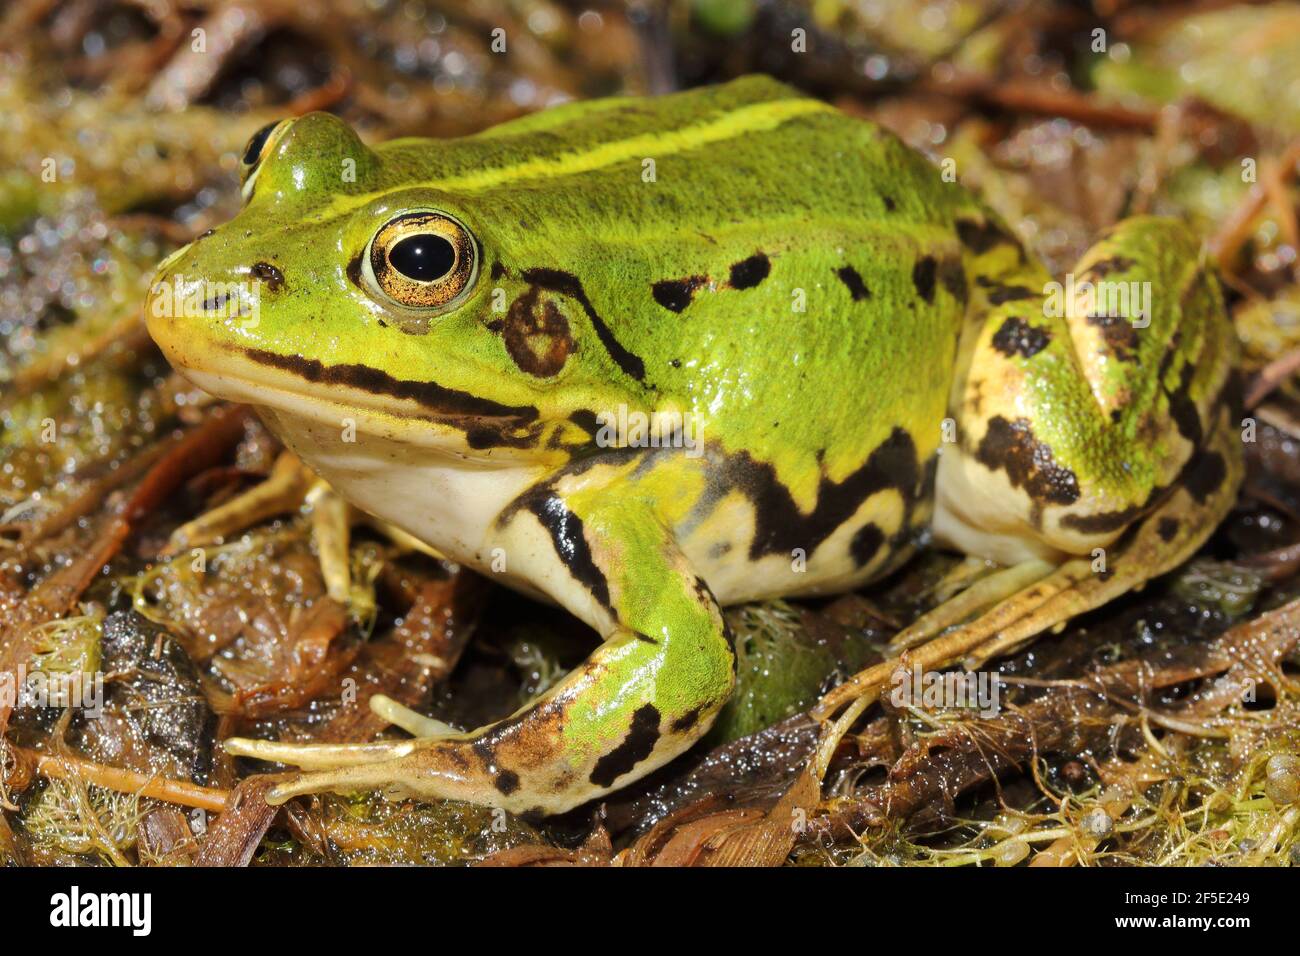 Pool frog (Pelophylax lessonae) in natural habitat Stock Photo